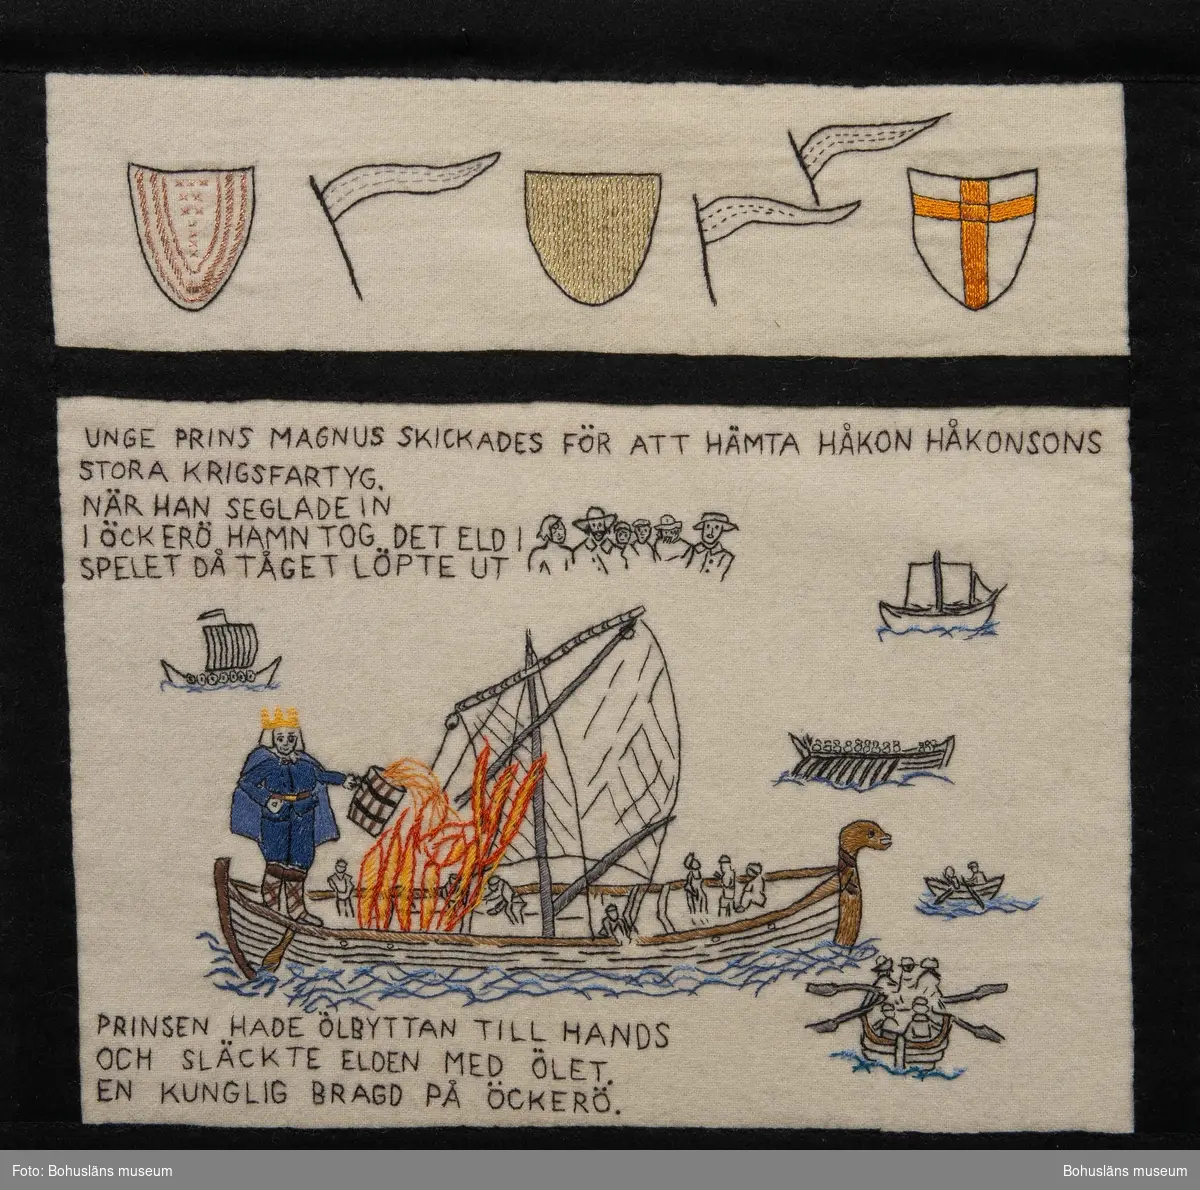 Unge prins Magnus skickades för att hämta Håkon Håkonssons stora krigsfartyg.
När han seglade in i Öckerö hamn tog det eld i spelet då tåget löpte ut
Prinsen hade ölbyttan till hands och släckte  elden med ölet.
En kunglig bragd på Öckerö.